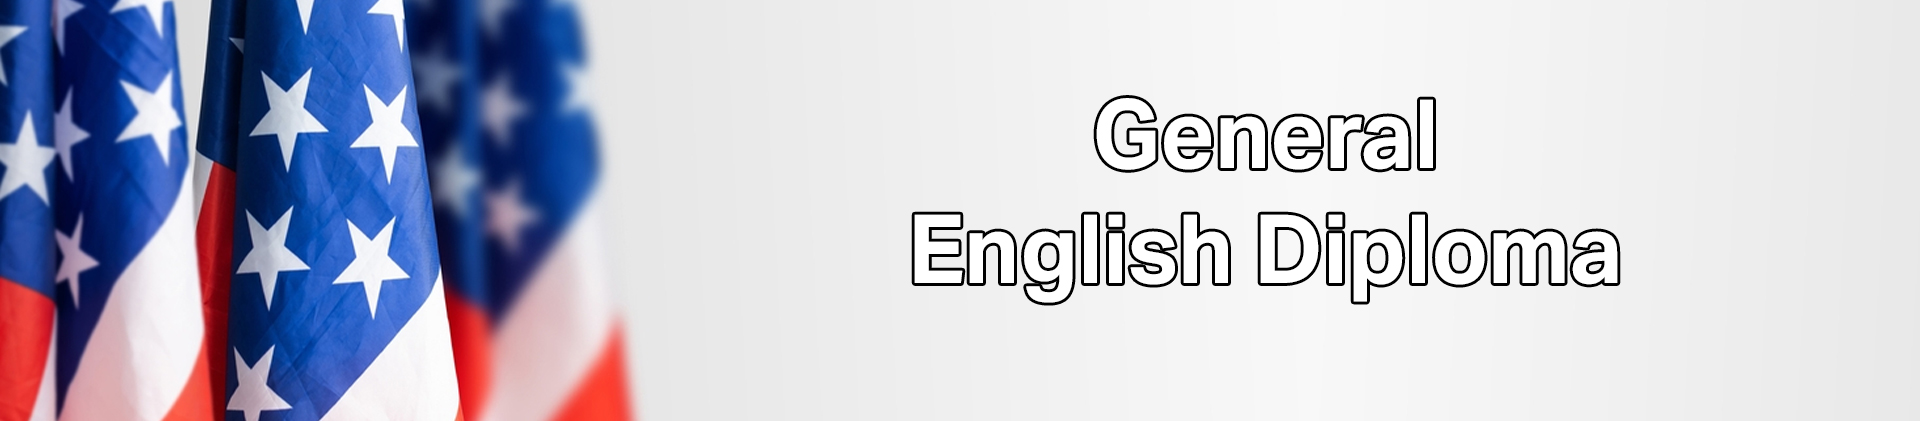 General English Diploma